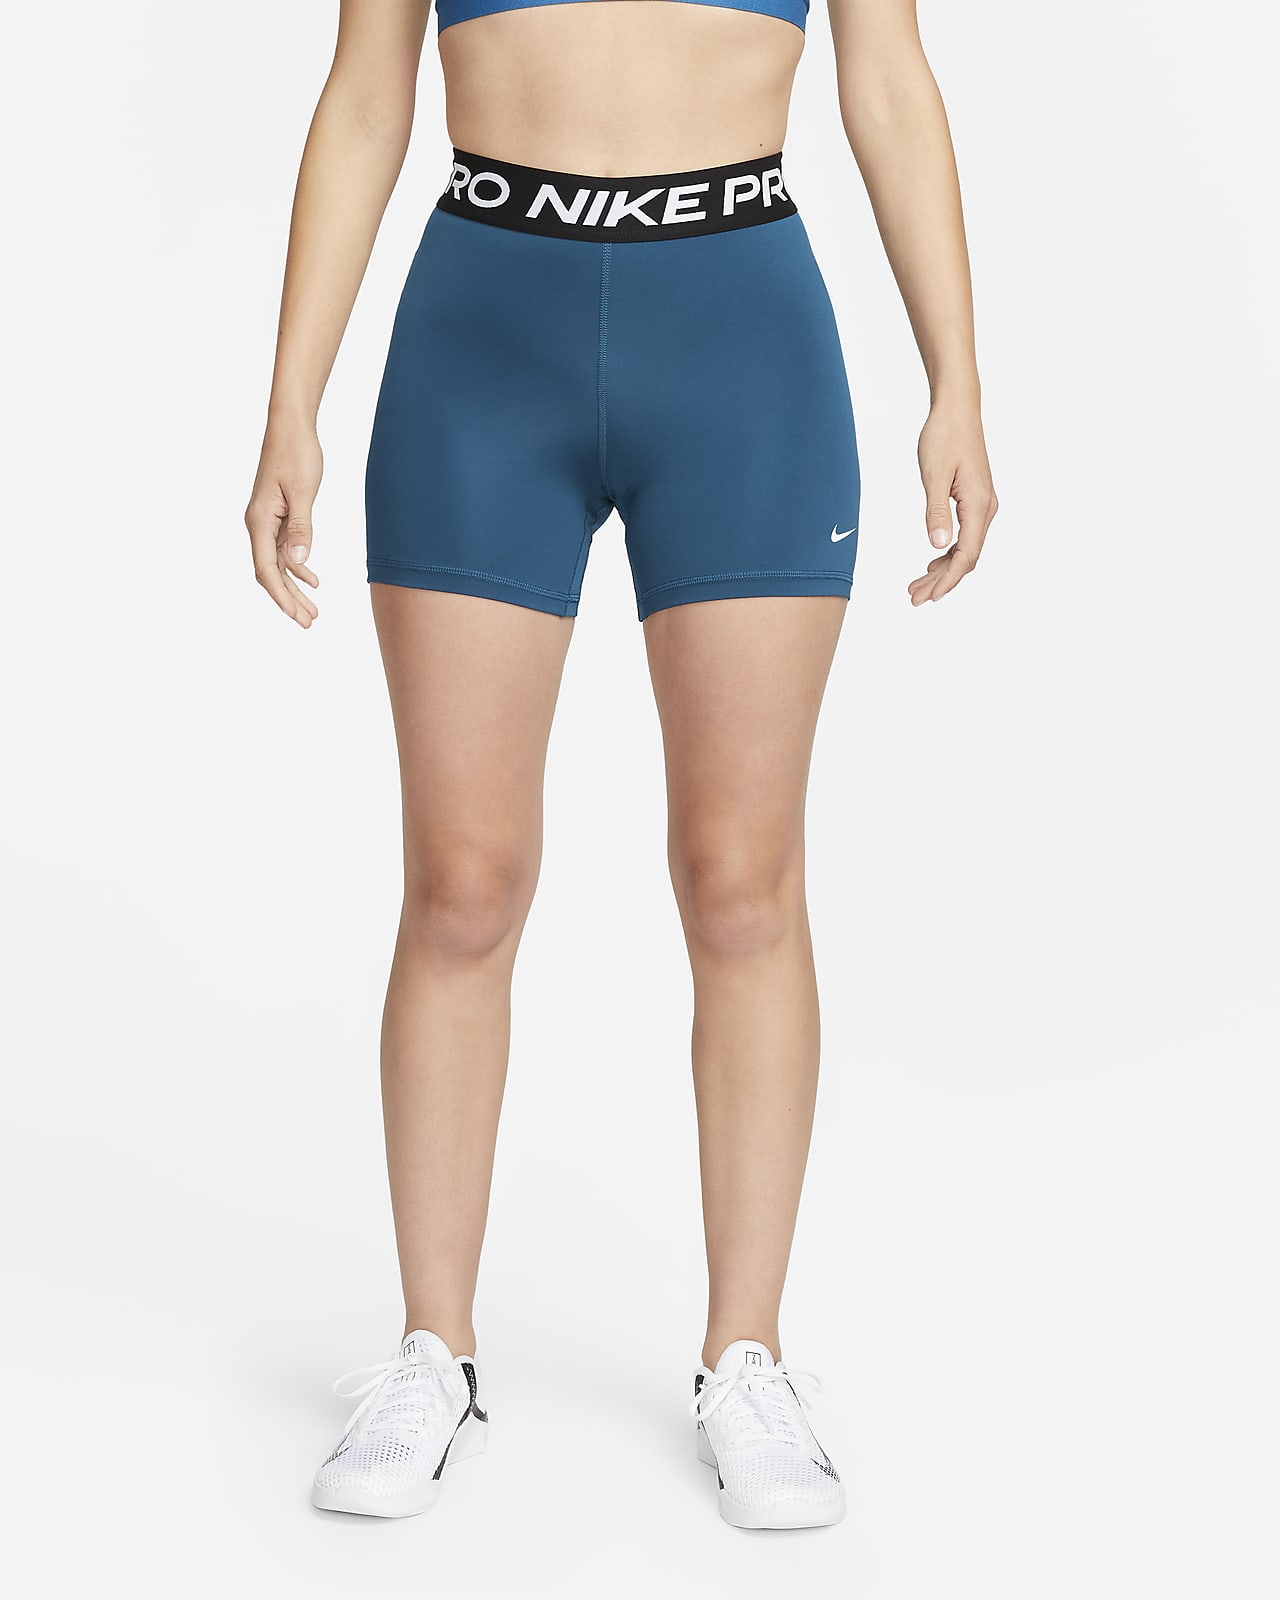 Γυναικείο σορτς Nike Pro 365 13 cm